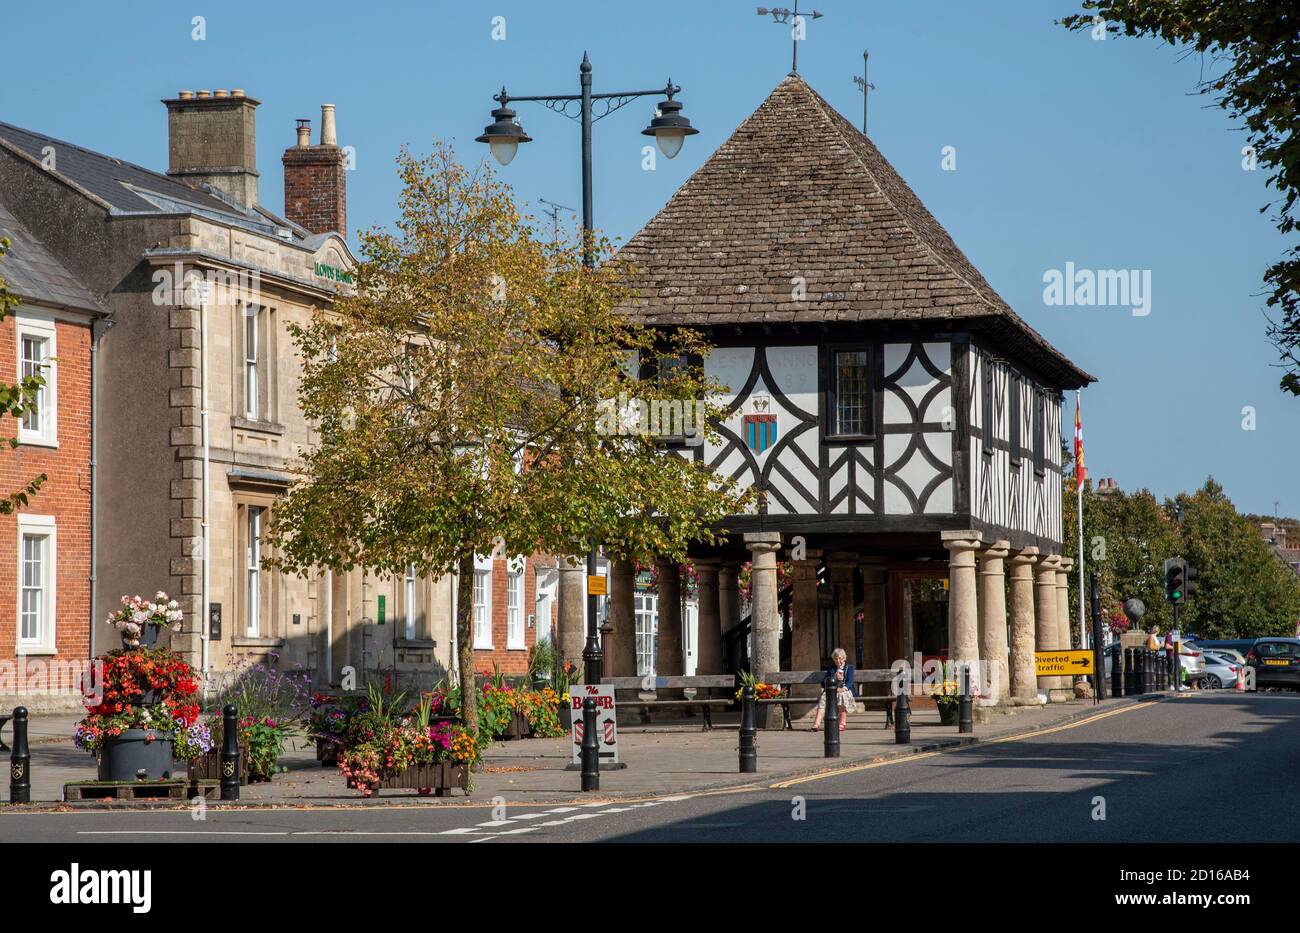 Royal Wootton Bassett, Wiltshire, Inglaterra, Reino Unido. 2020. El histórico mercado de la ciudad de Royal Wootton Bassett con el Ayuntamiento construido en el siglo 17. Foto de stock